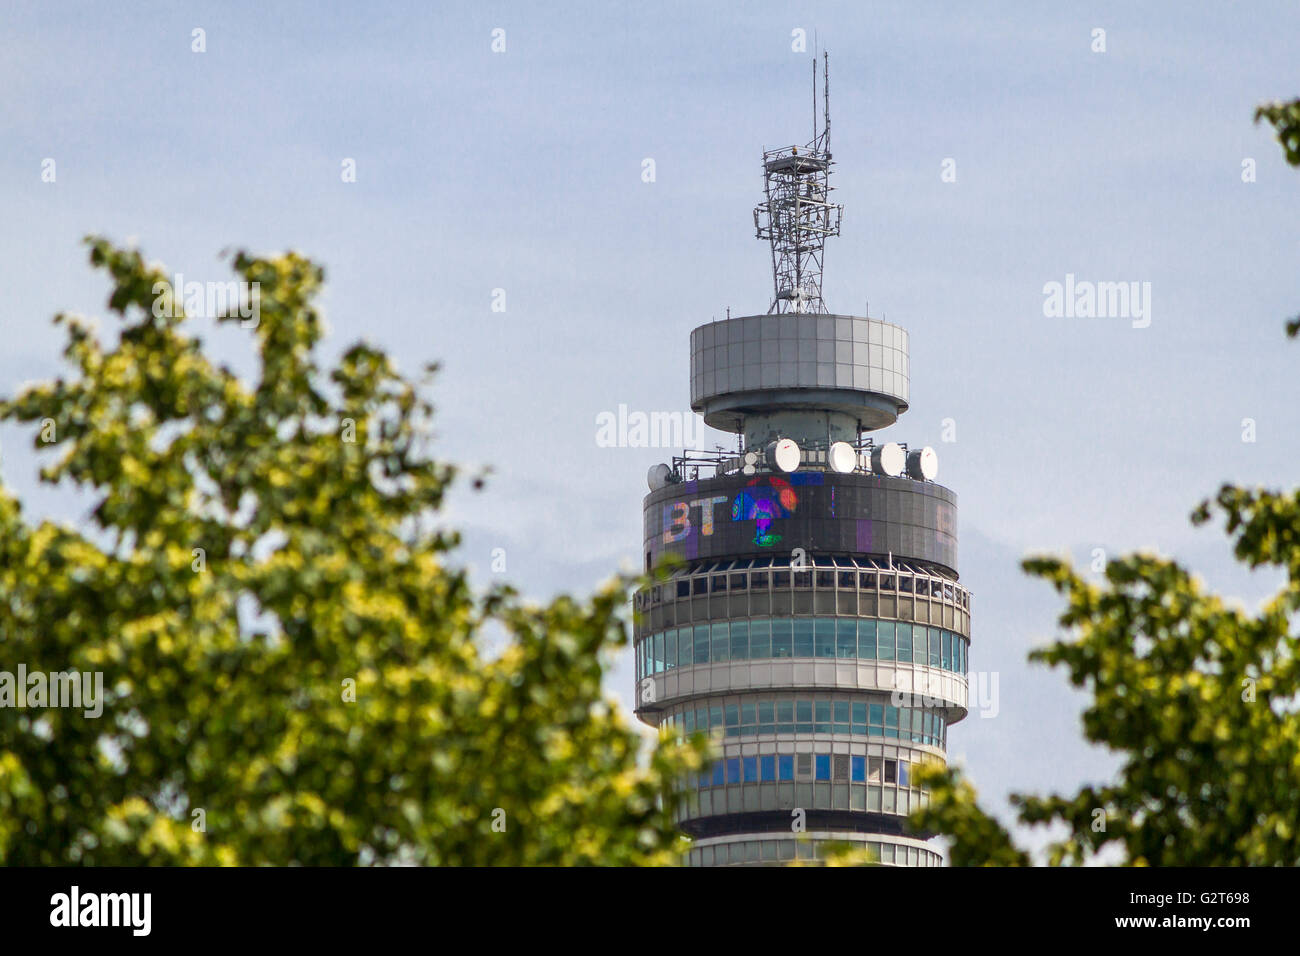 La BT Tower, precedentemente conosciuta come la Post Office Tower, fu completata nel 1964, vista attraverso gli alberi del Regents Park a Londra, Regno Unito Foto Stock